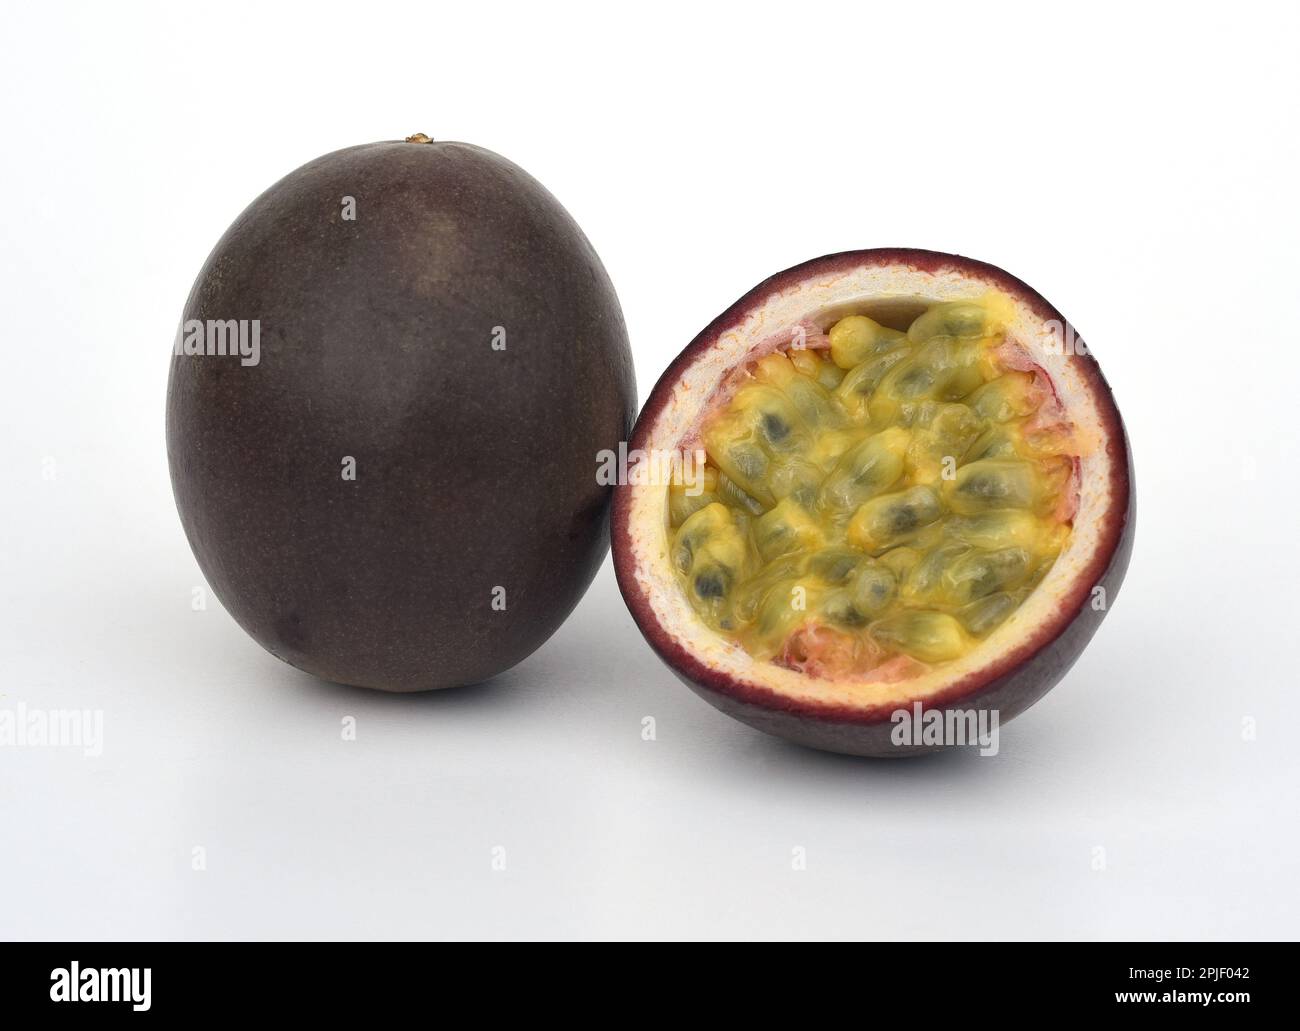 Passionsfrucht, eine aromatische Frucht, stammt urspruenglich aus Mittel- und Suedamerika, wird heute aber weltweit in den Subtropen kultiviert. Passi Stock Photo